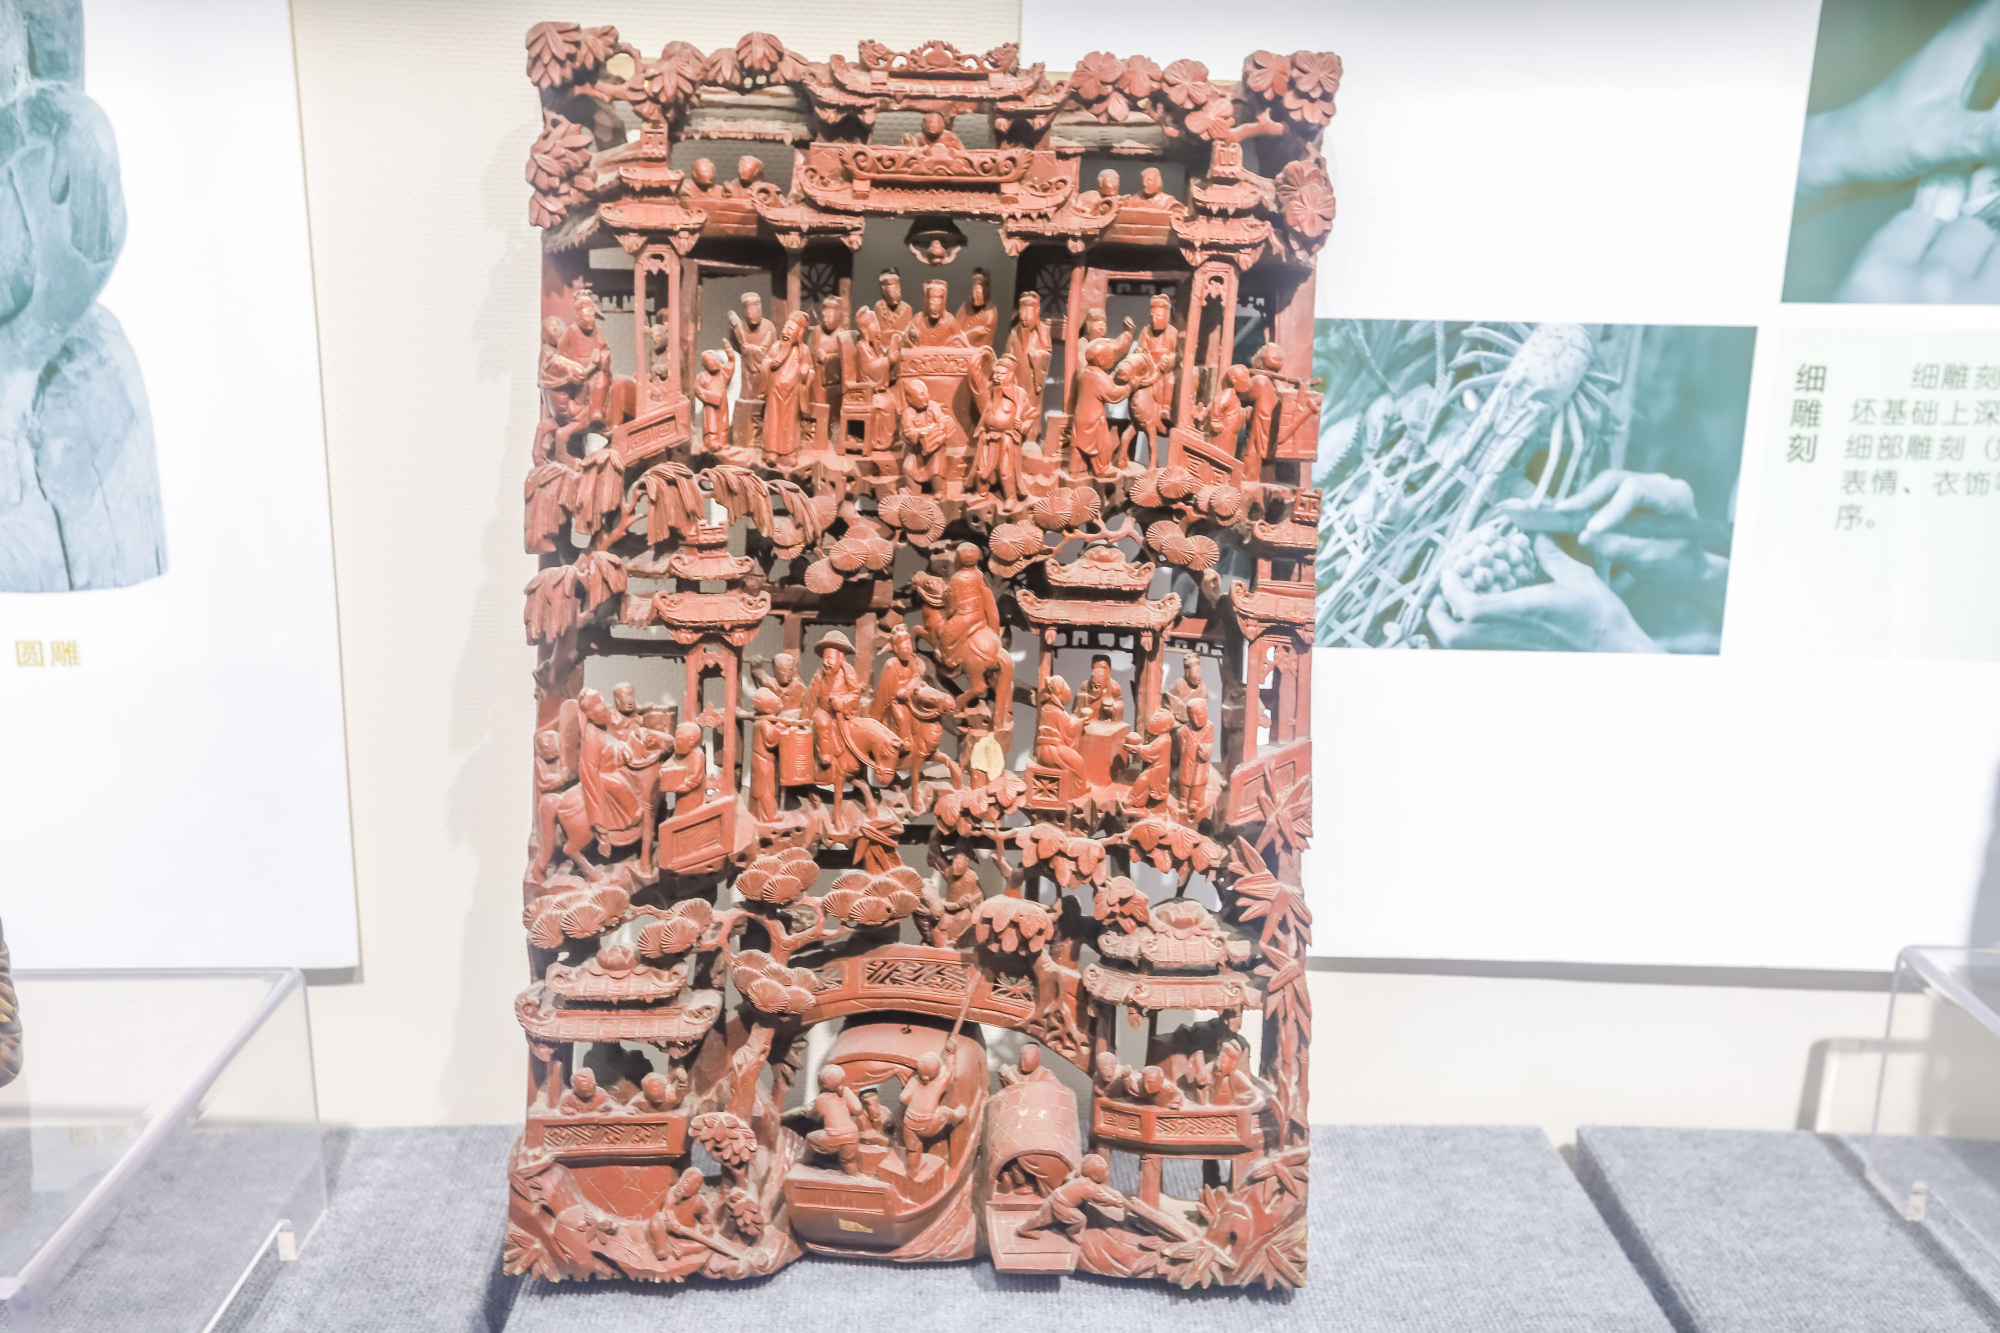 潮州博物馆的镇馆之宝,府楼猴木雕,潮汕独特的文化景观